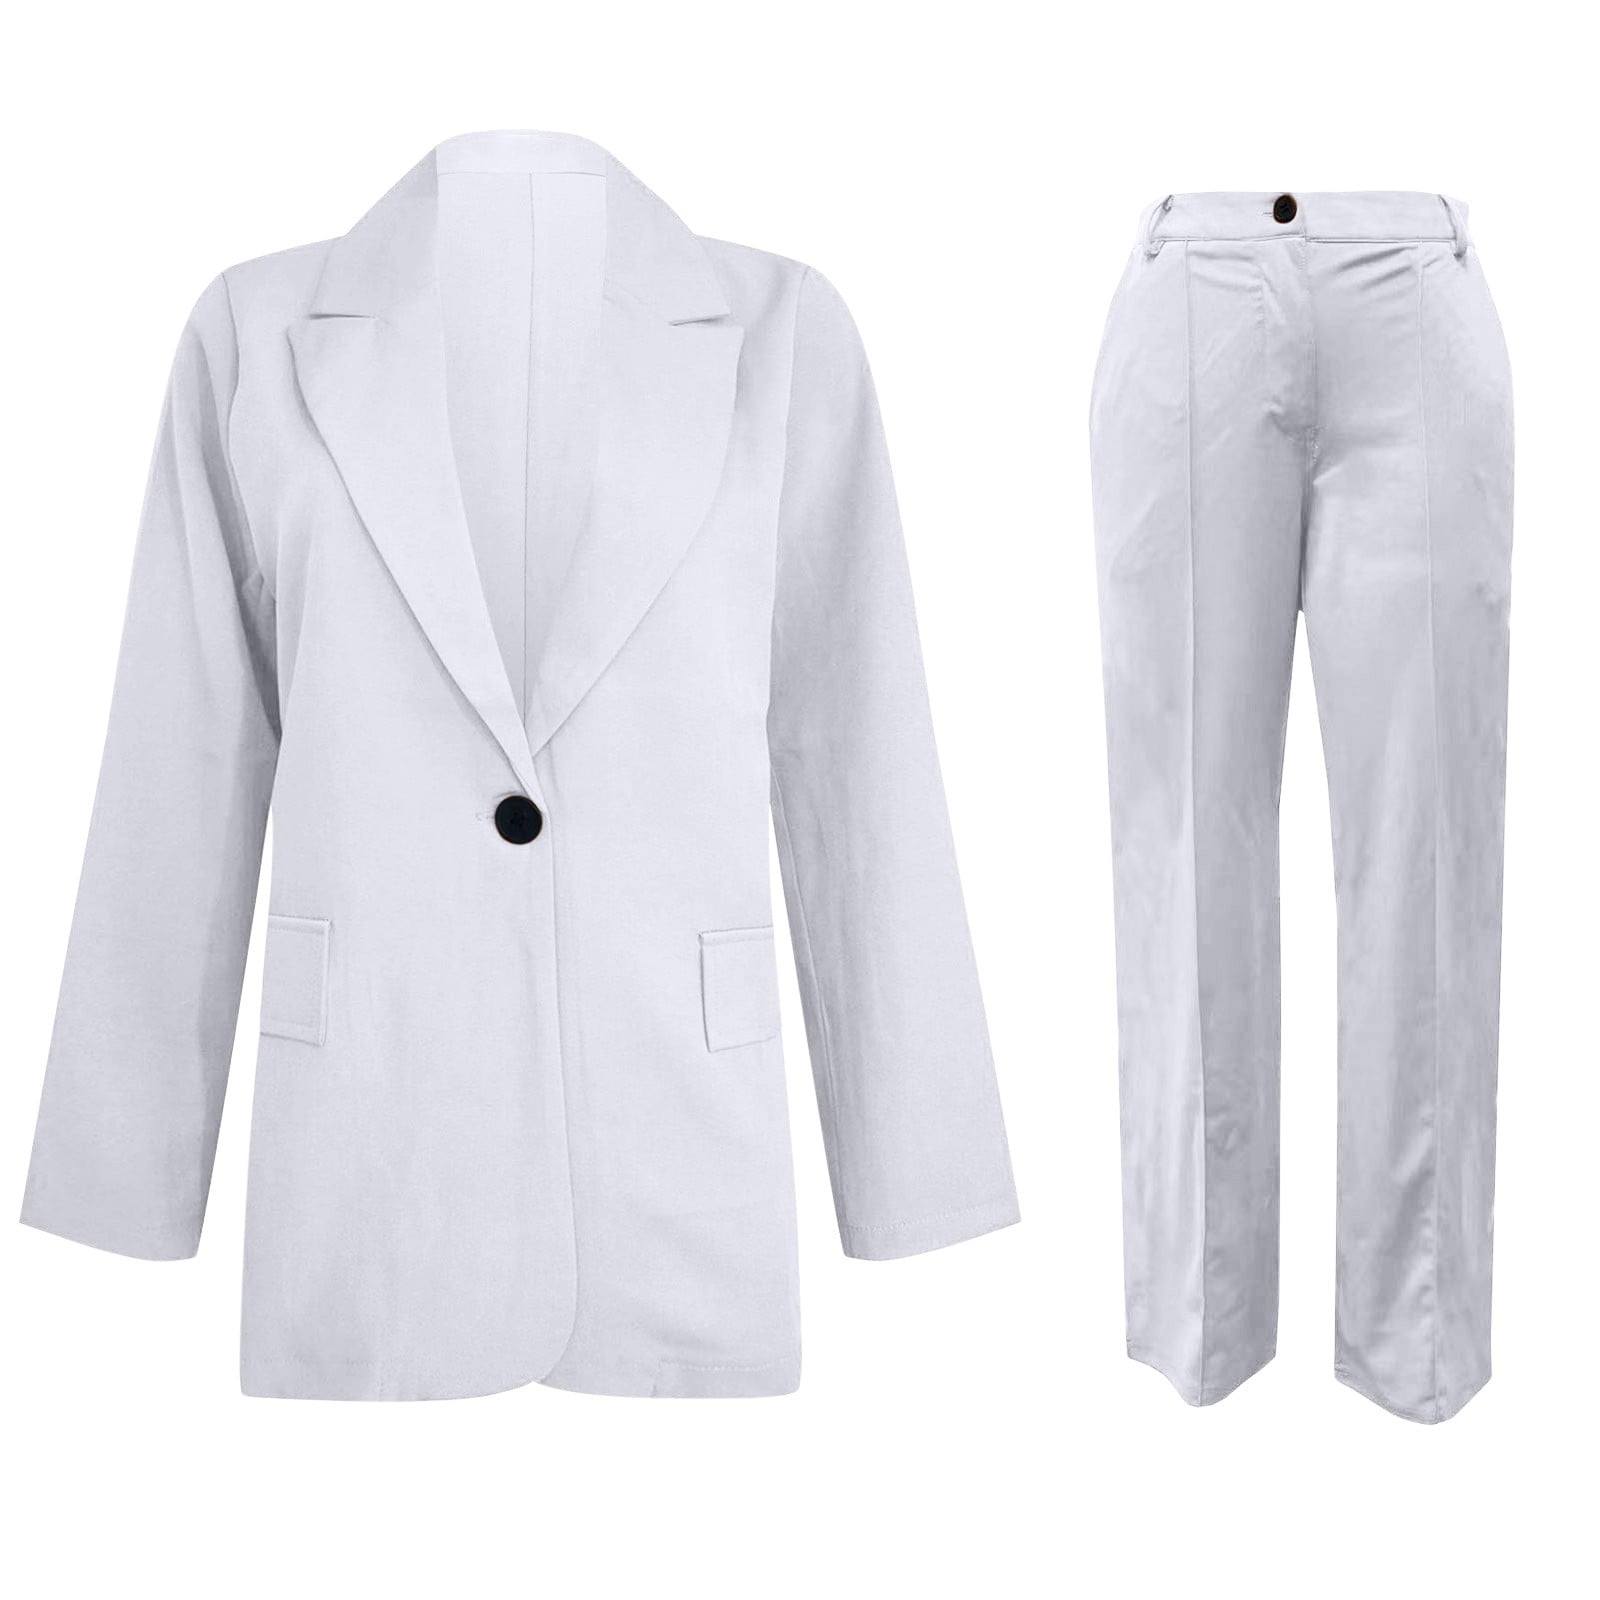 Pants Suit 2 Piece Set Women Fashion V Neck Long Sleeve Coat Top Long Pants  Suit White Black Outfits Casual Women Suits Clothing - AliExpress